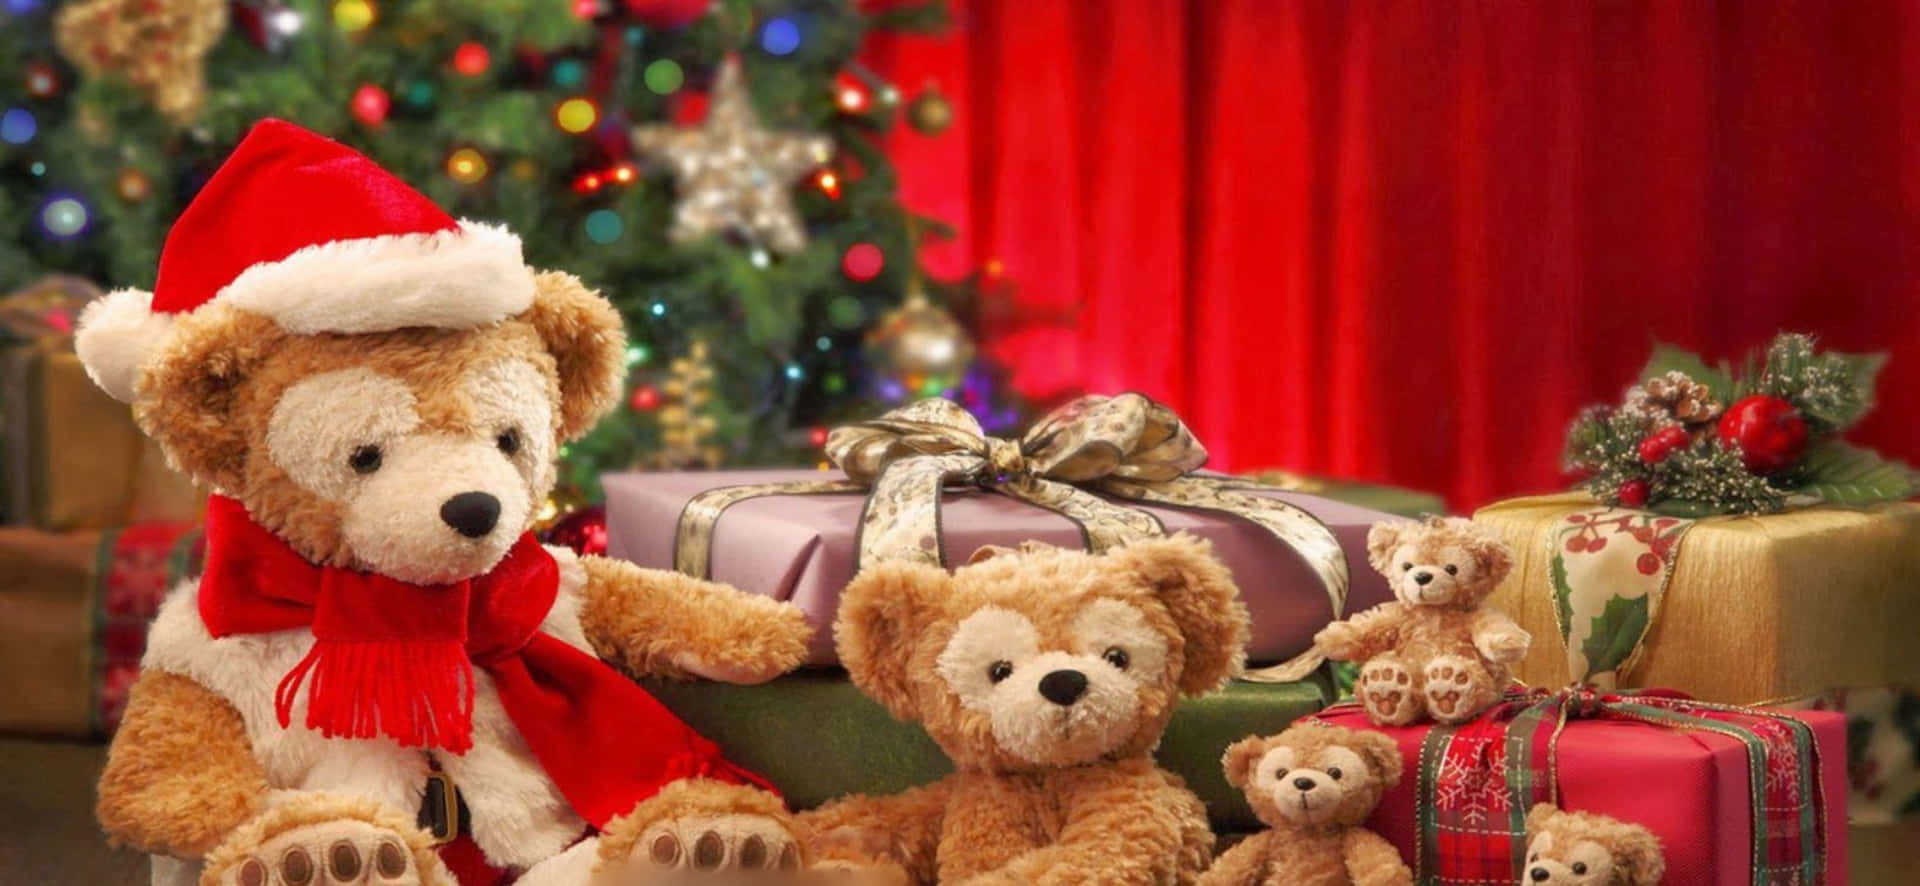 Teddybärenund Weihnachtsgeschenke Bild